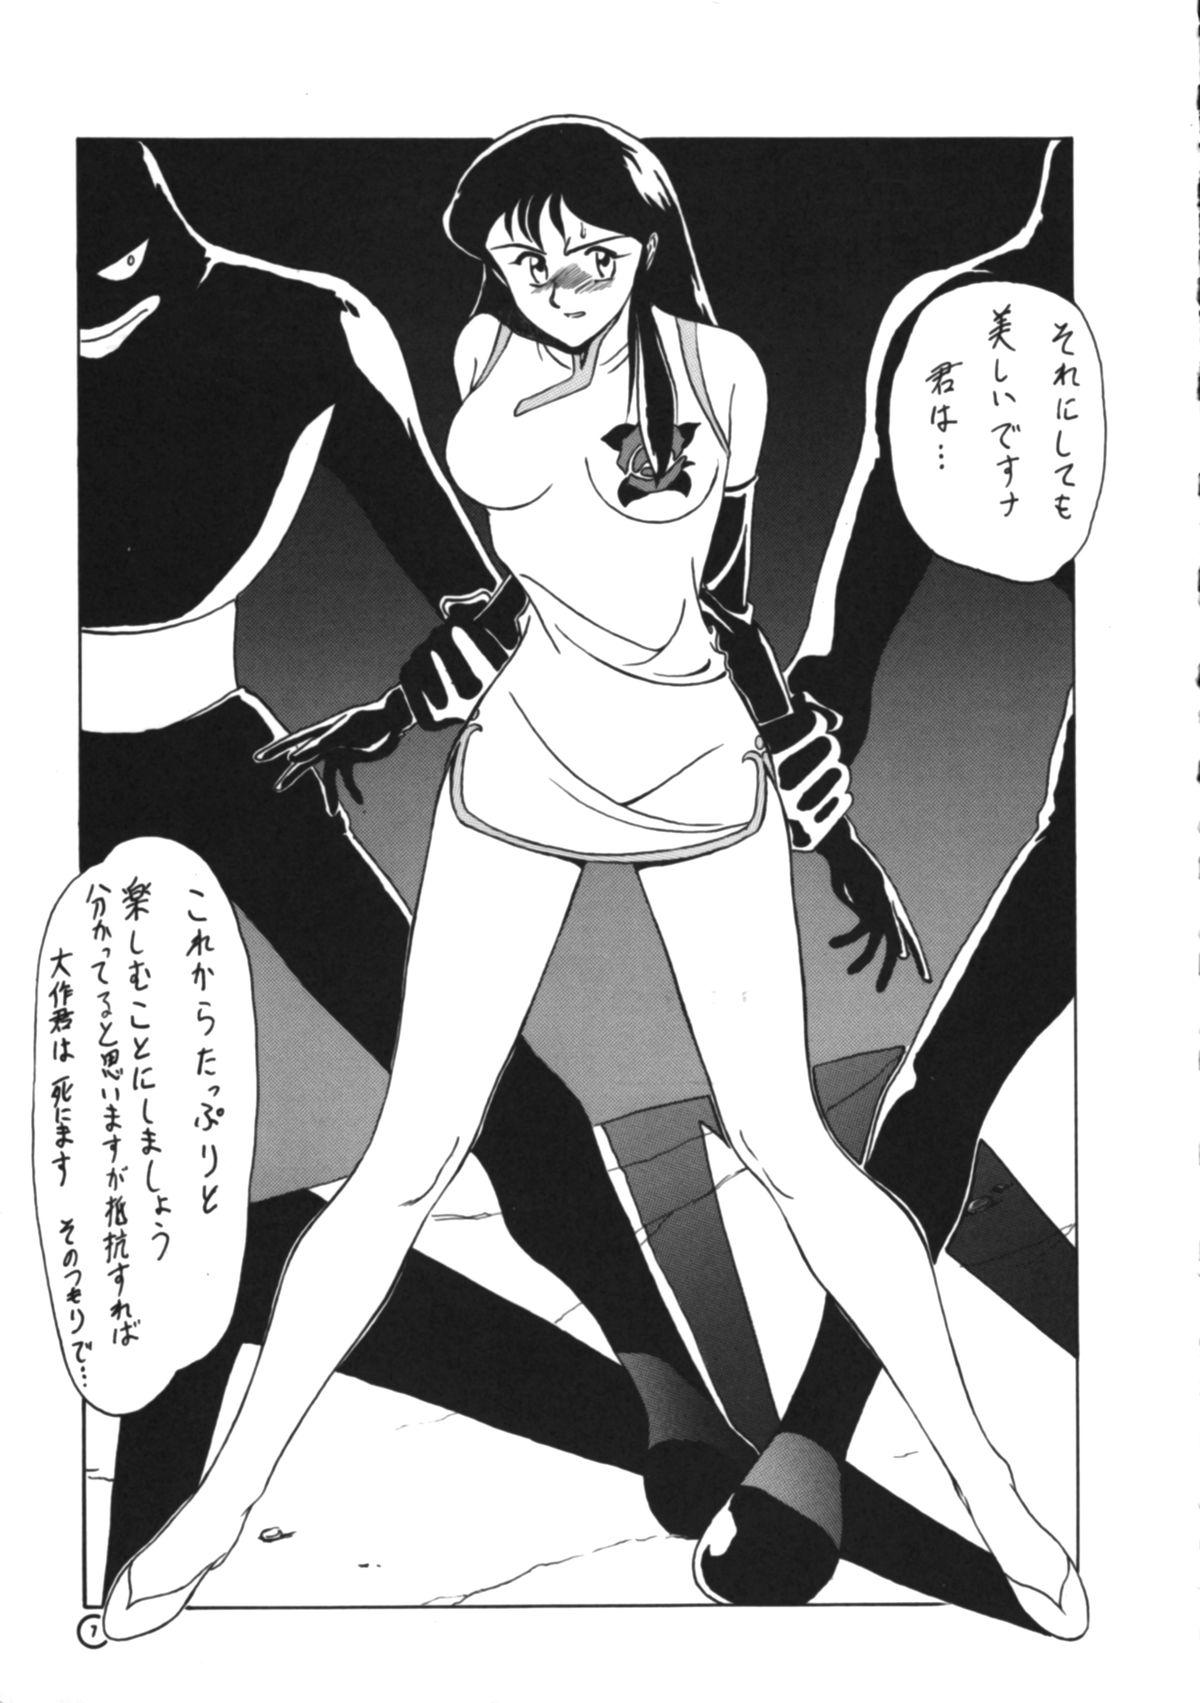 Handjobs Dendoushiki Shudou - Giant robo Ex Girlfriend - Page 6